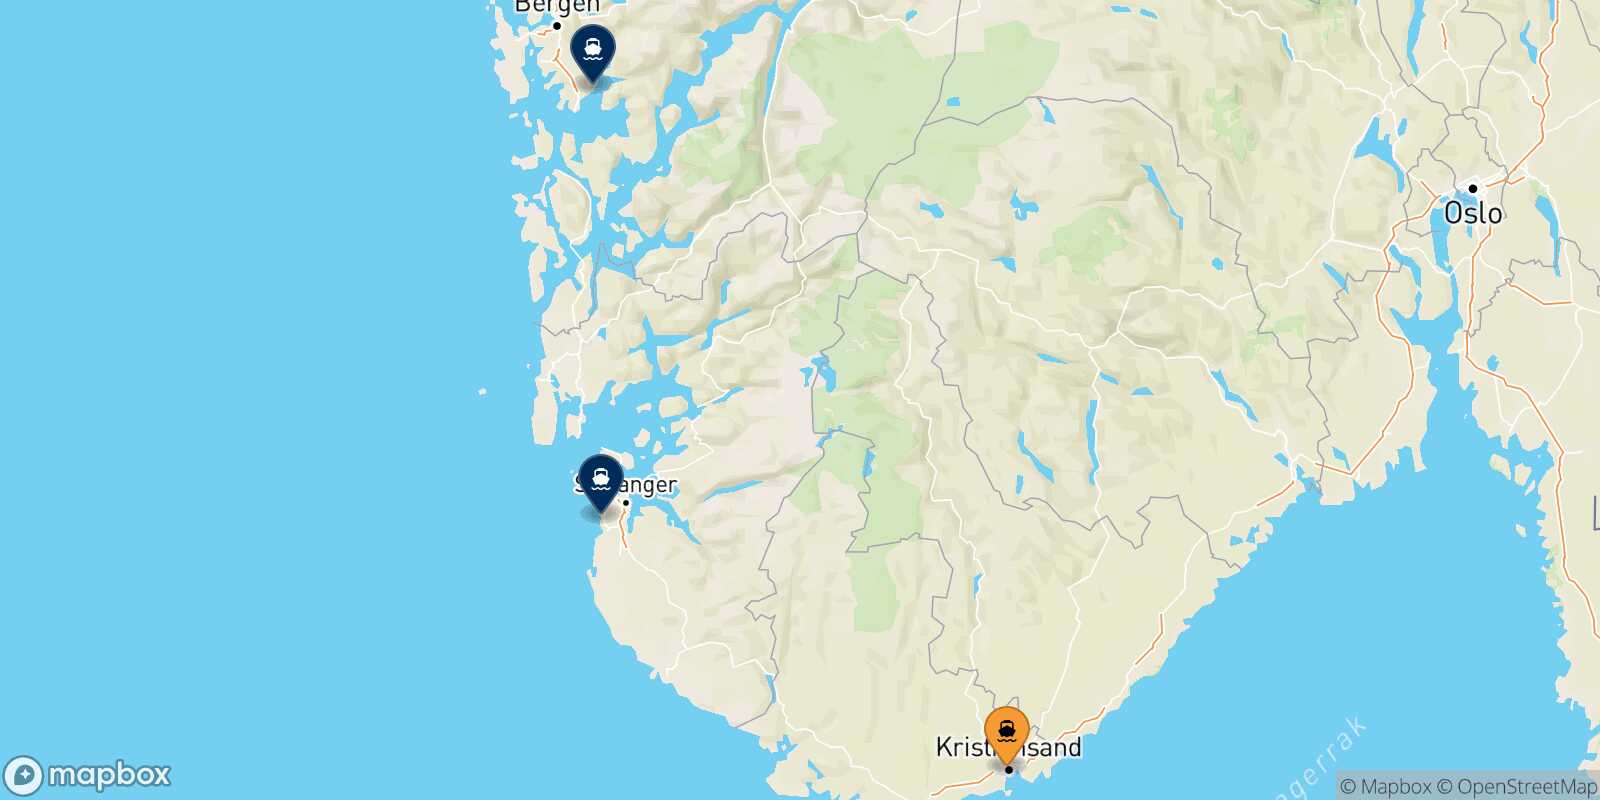 Mappa delle destinazioni raggiungibili da Kristiansand